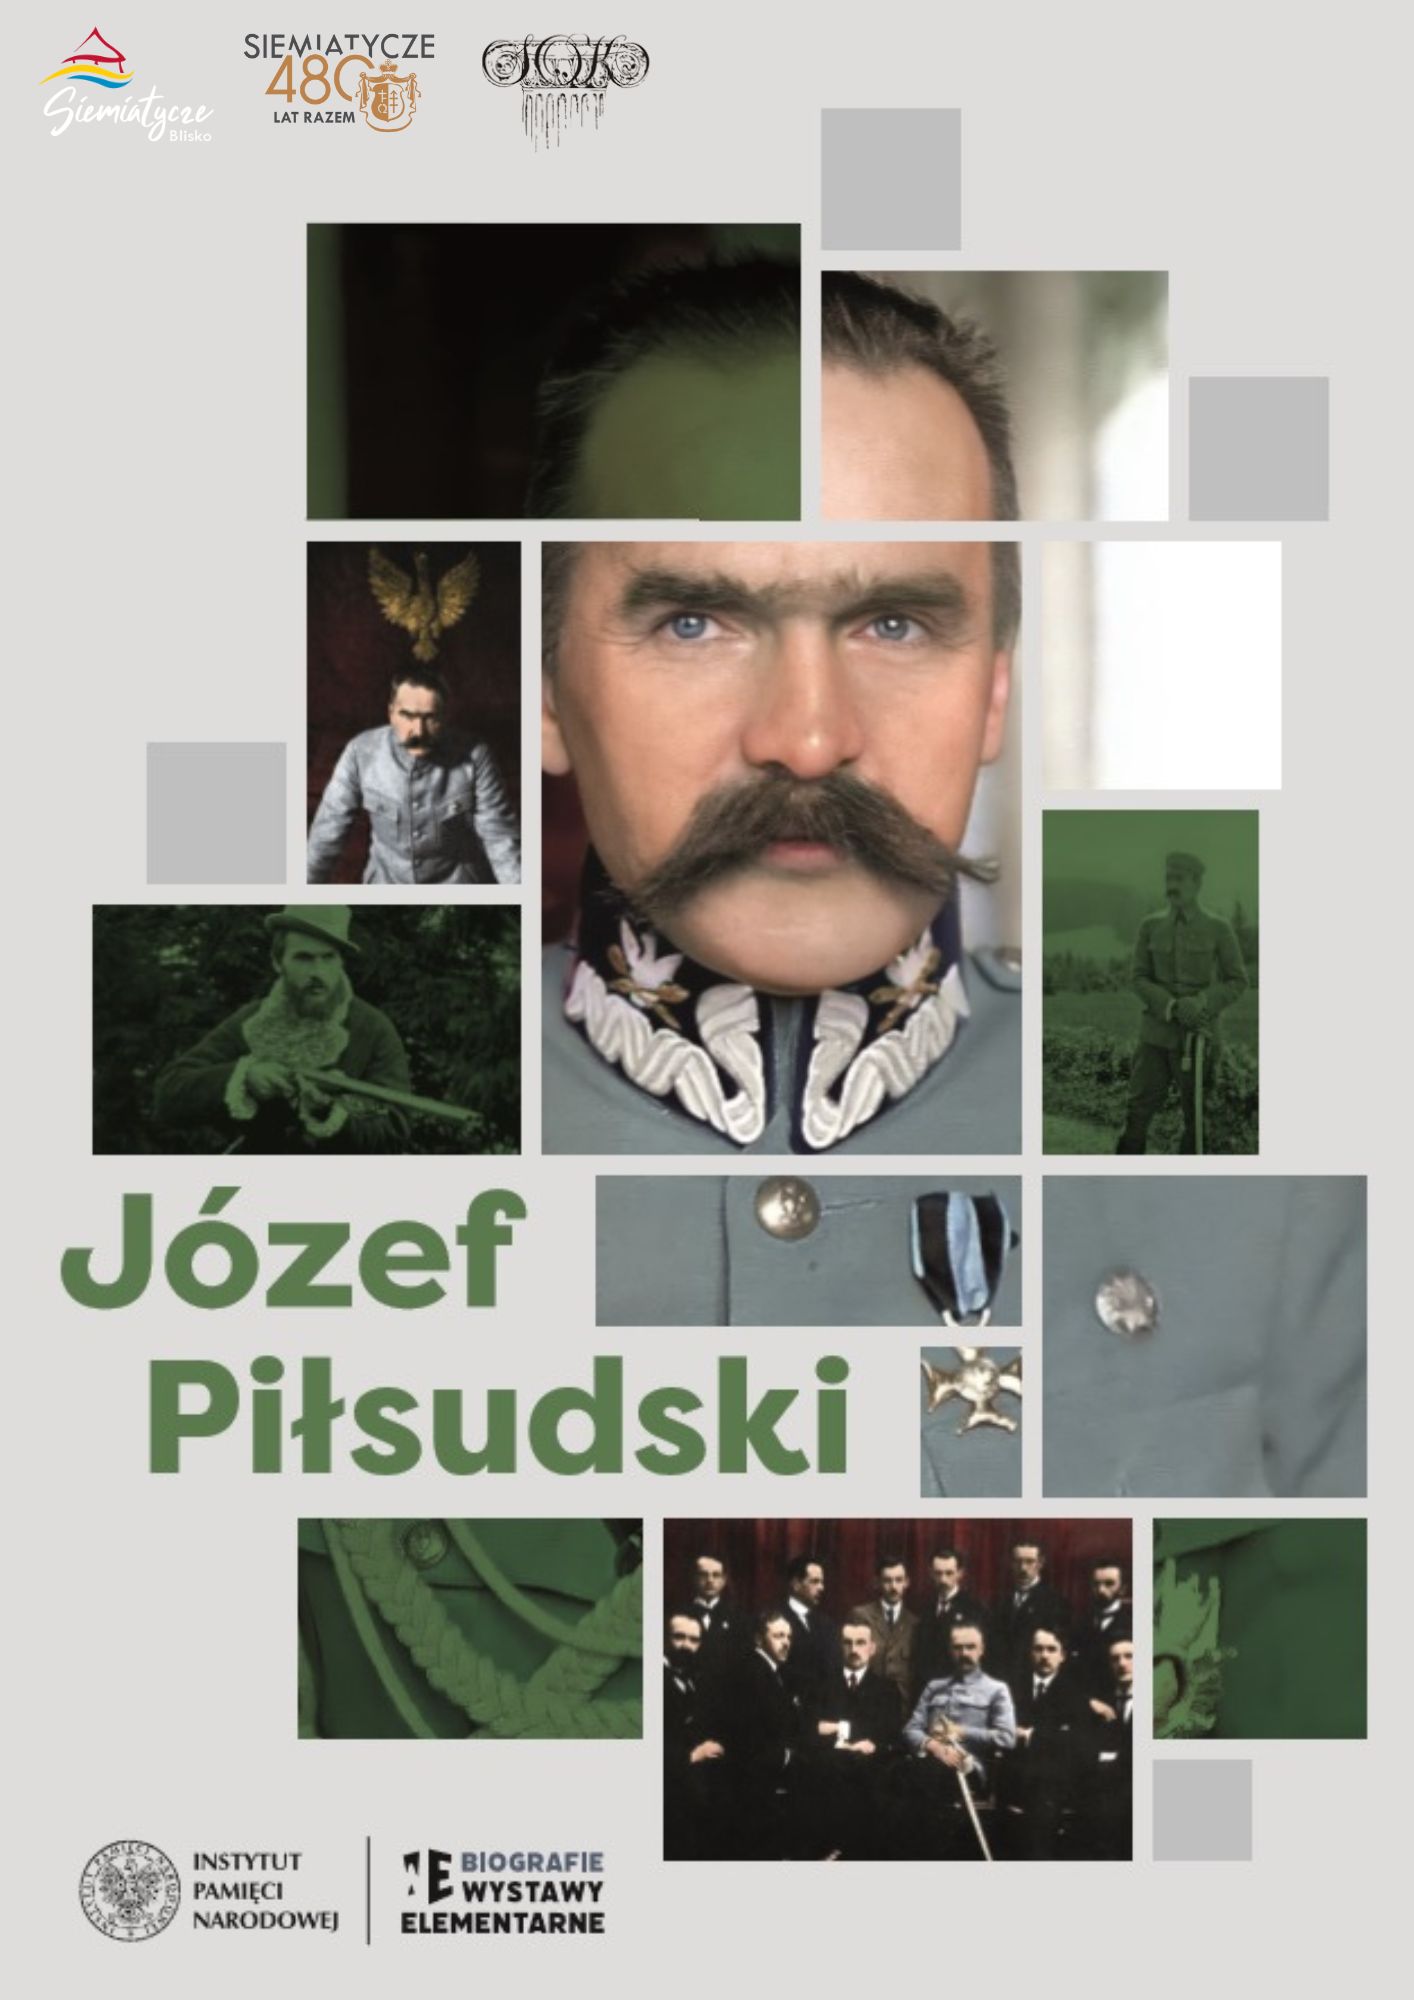 Grafika z kolażem zdjęć Józefa Piłsudskiego, Biograficzna wystawa elementarna IPN o Józefie Piłsudskim